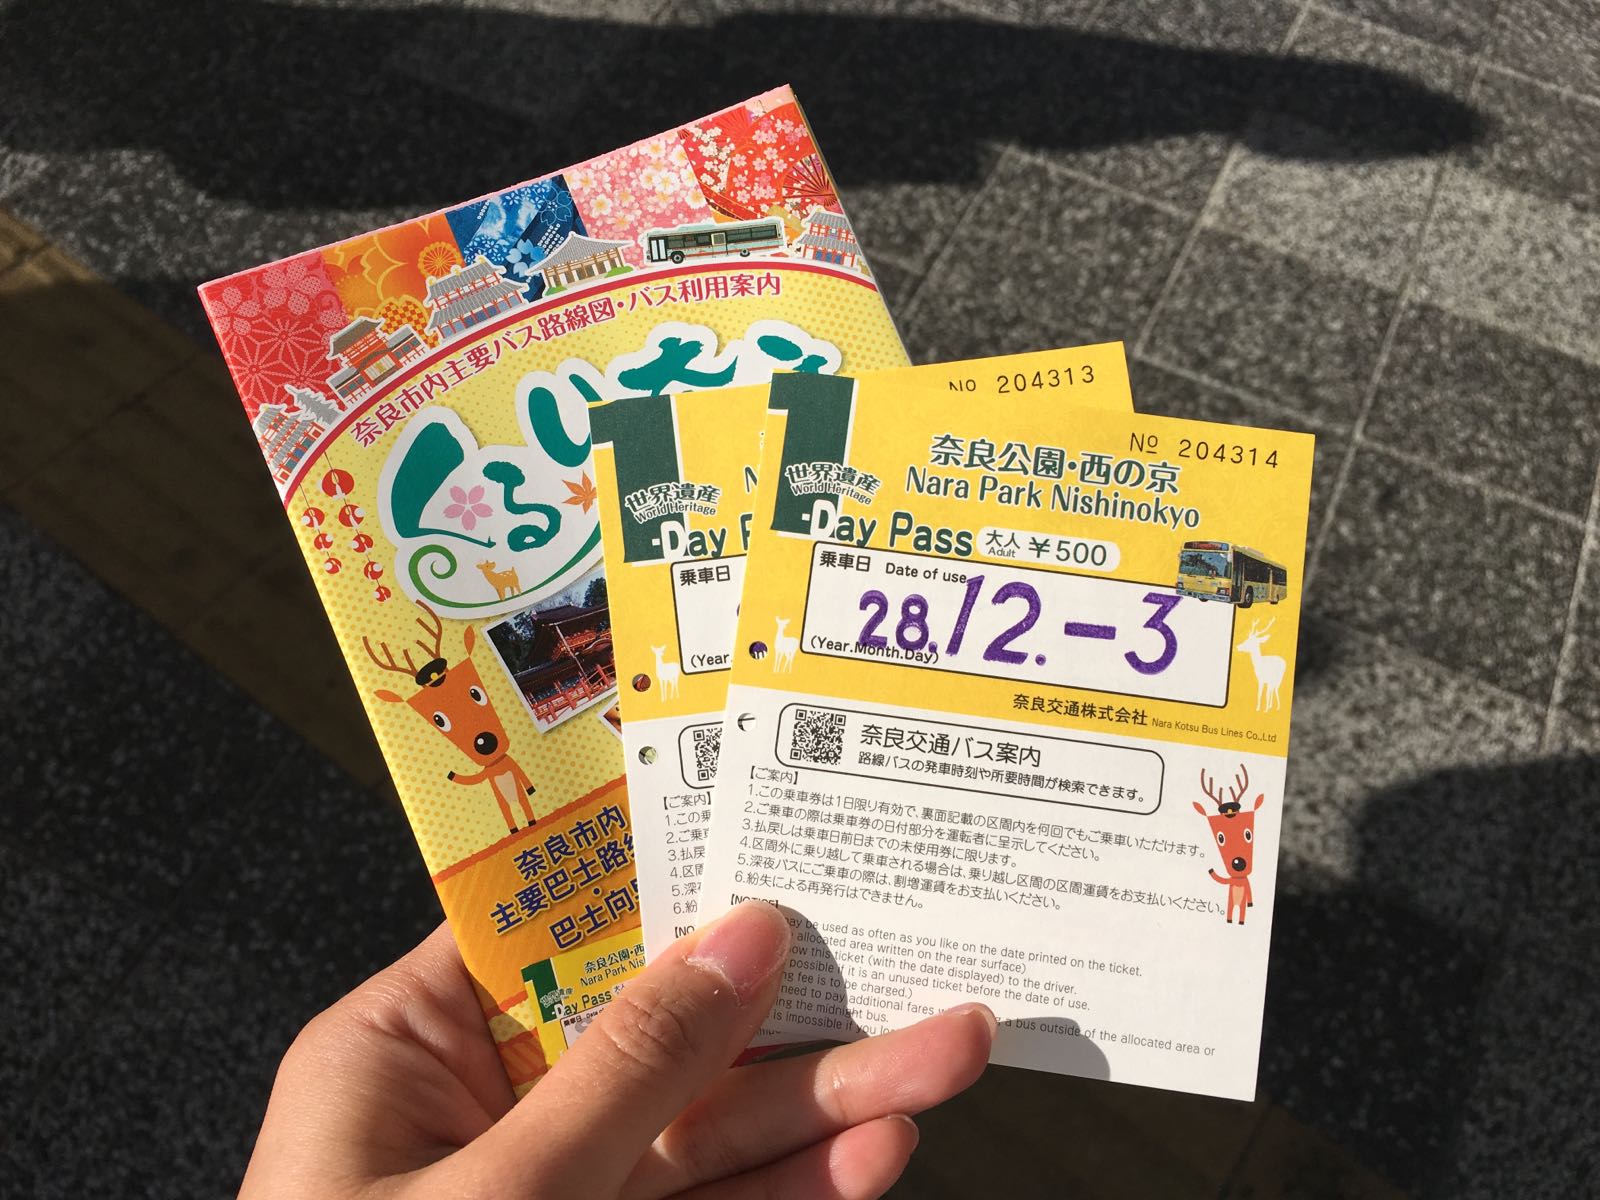 在JR奈良站购买巴士一日券，出现后有好几部车可以东大寺等景点。在奈良公